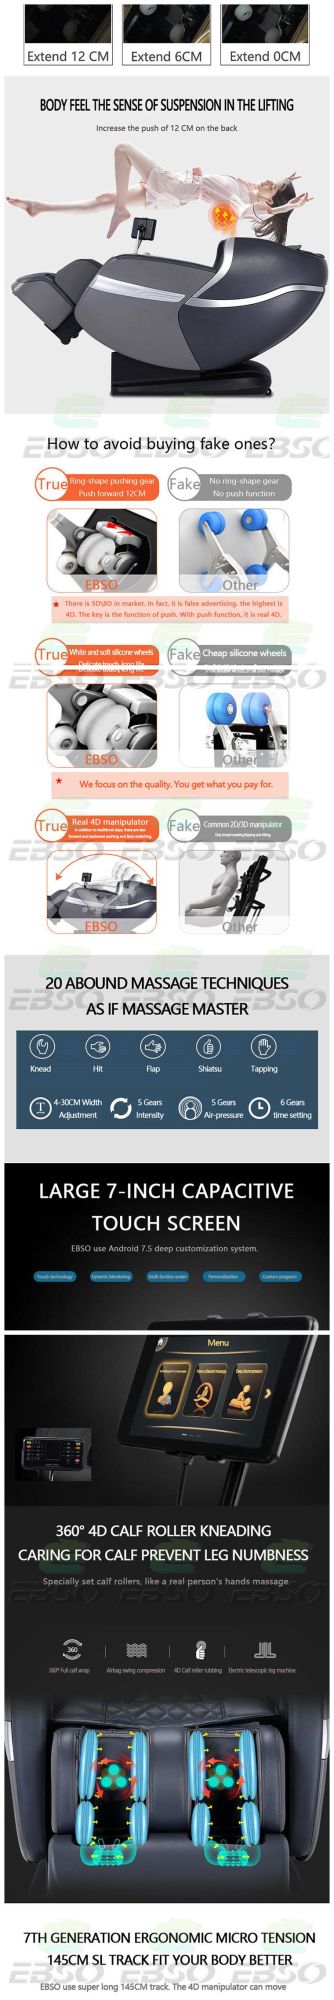 New Massager 2022 Shiatsu and Vibration Body Massager Zero Gravity Full Body Massage Chair